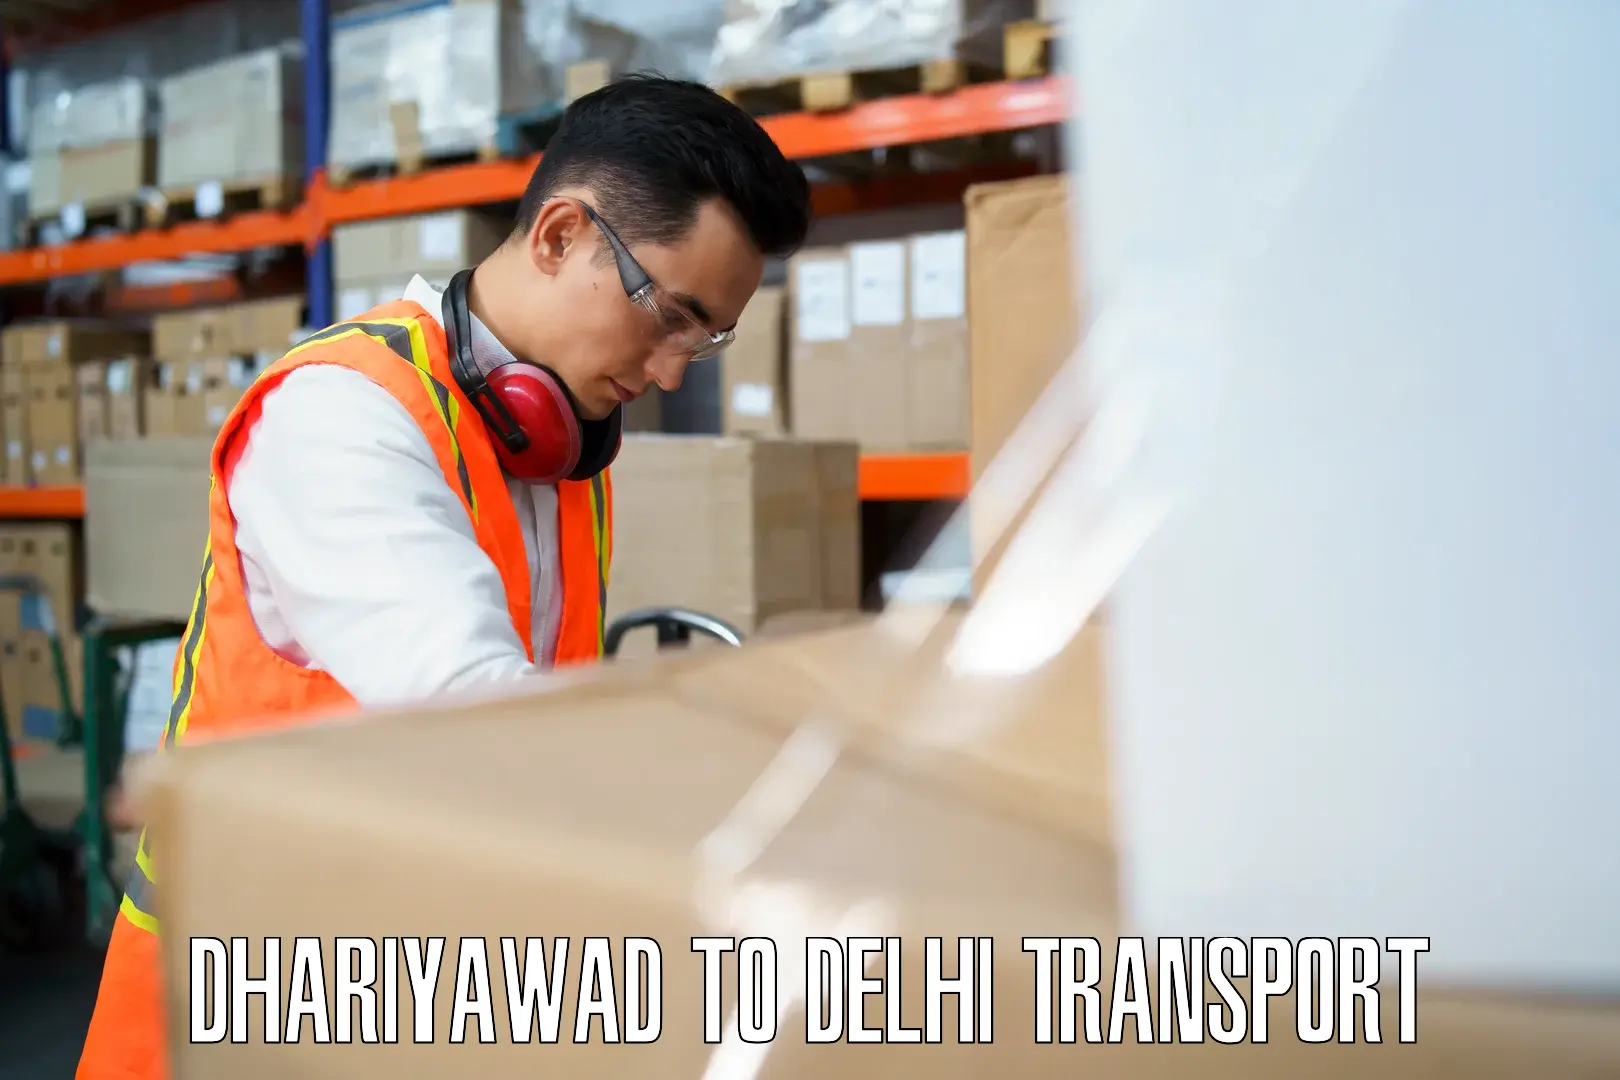 Shipping partner Dhariyawad to Delhi